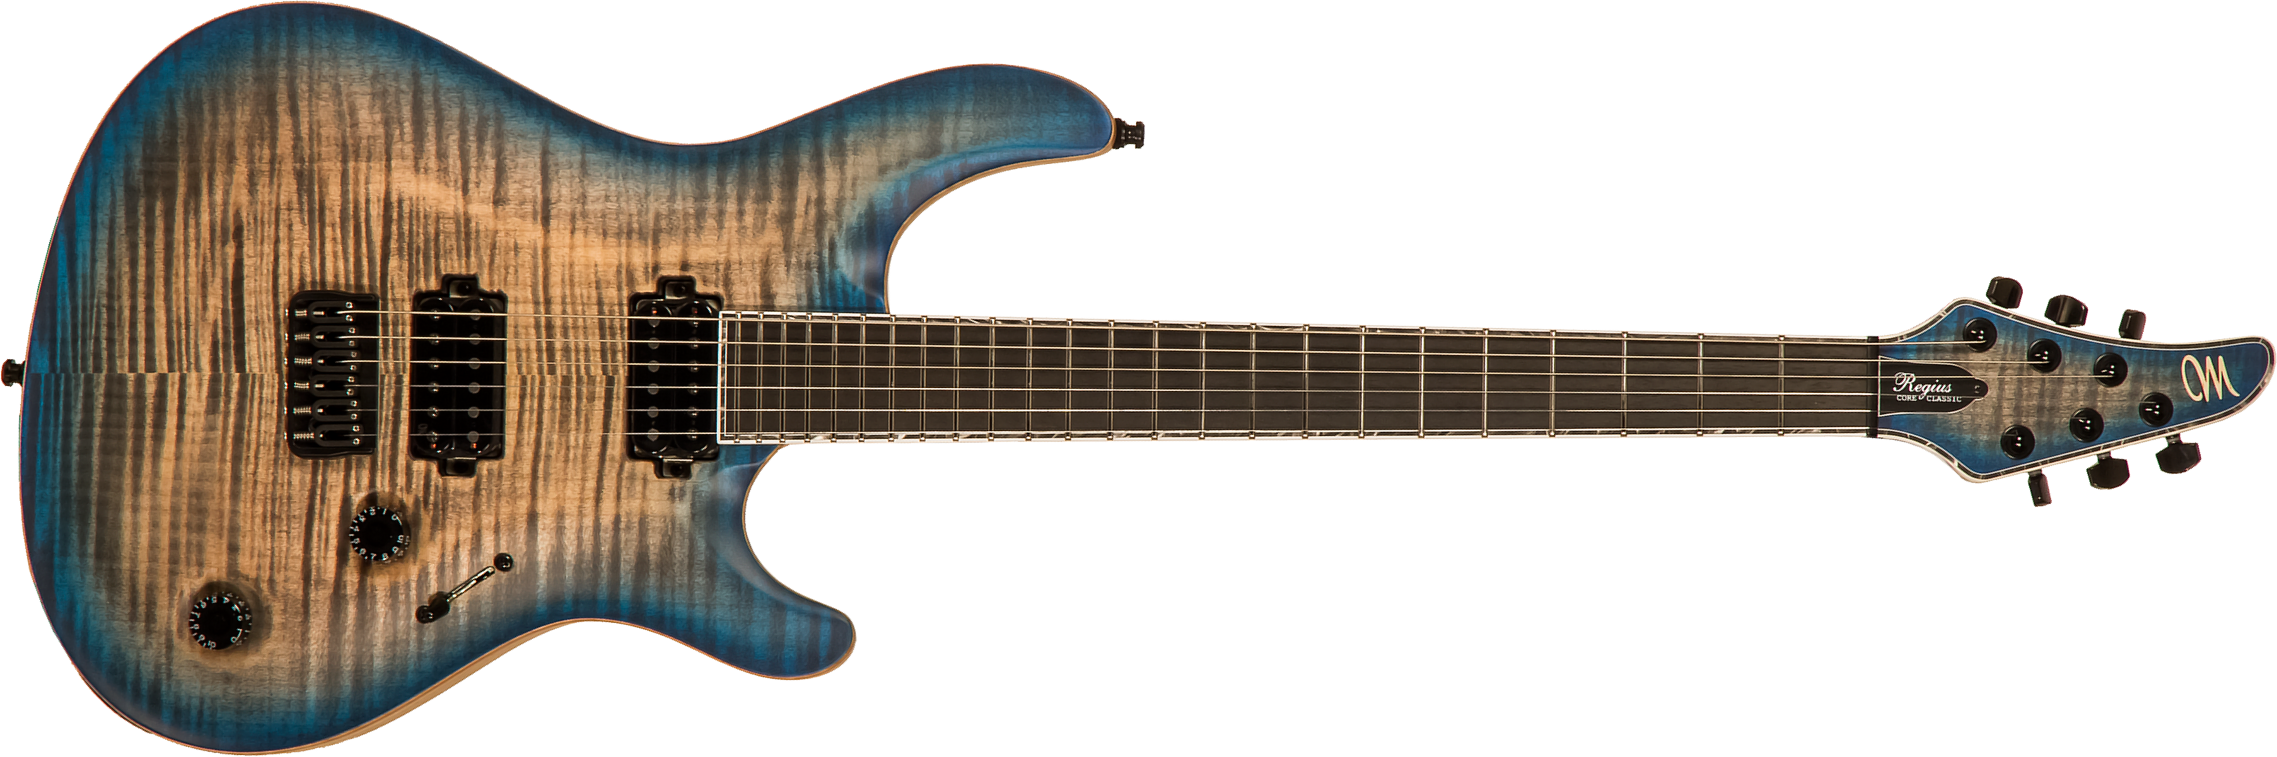 Mayones Guitars Regius Core Classic 6 Ash 2h Tko Eb #rf2204447 - Jean Black 2-tone Blue Sunburst Satine - Guitare Électrique Double Cut - Main picture